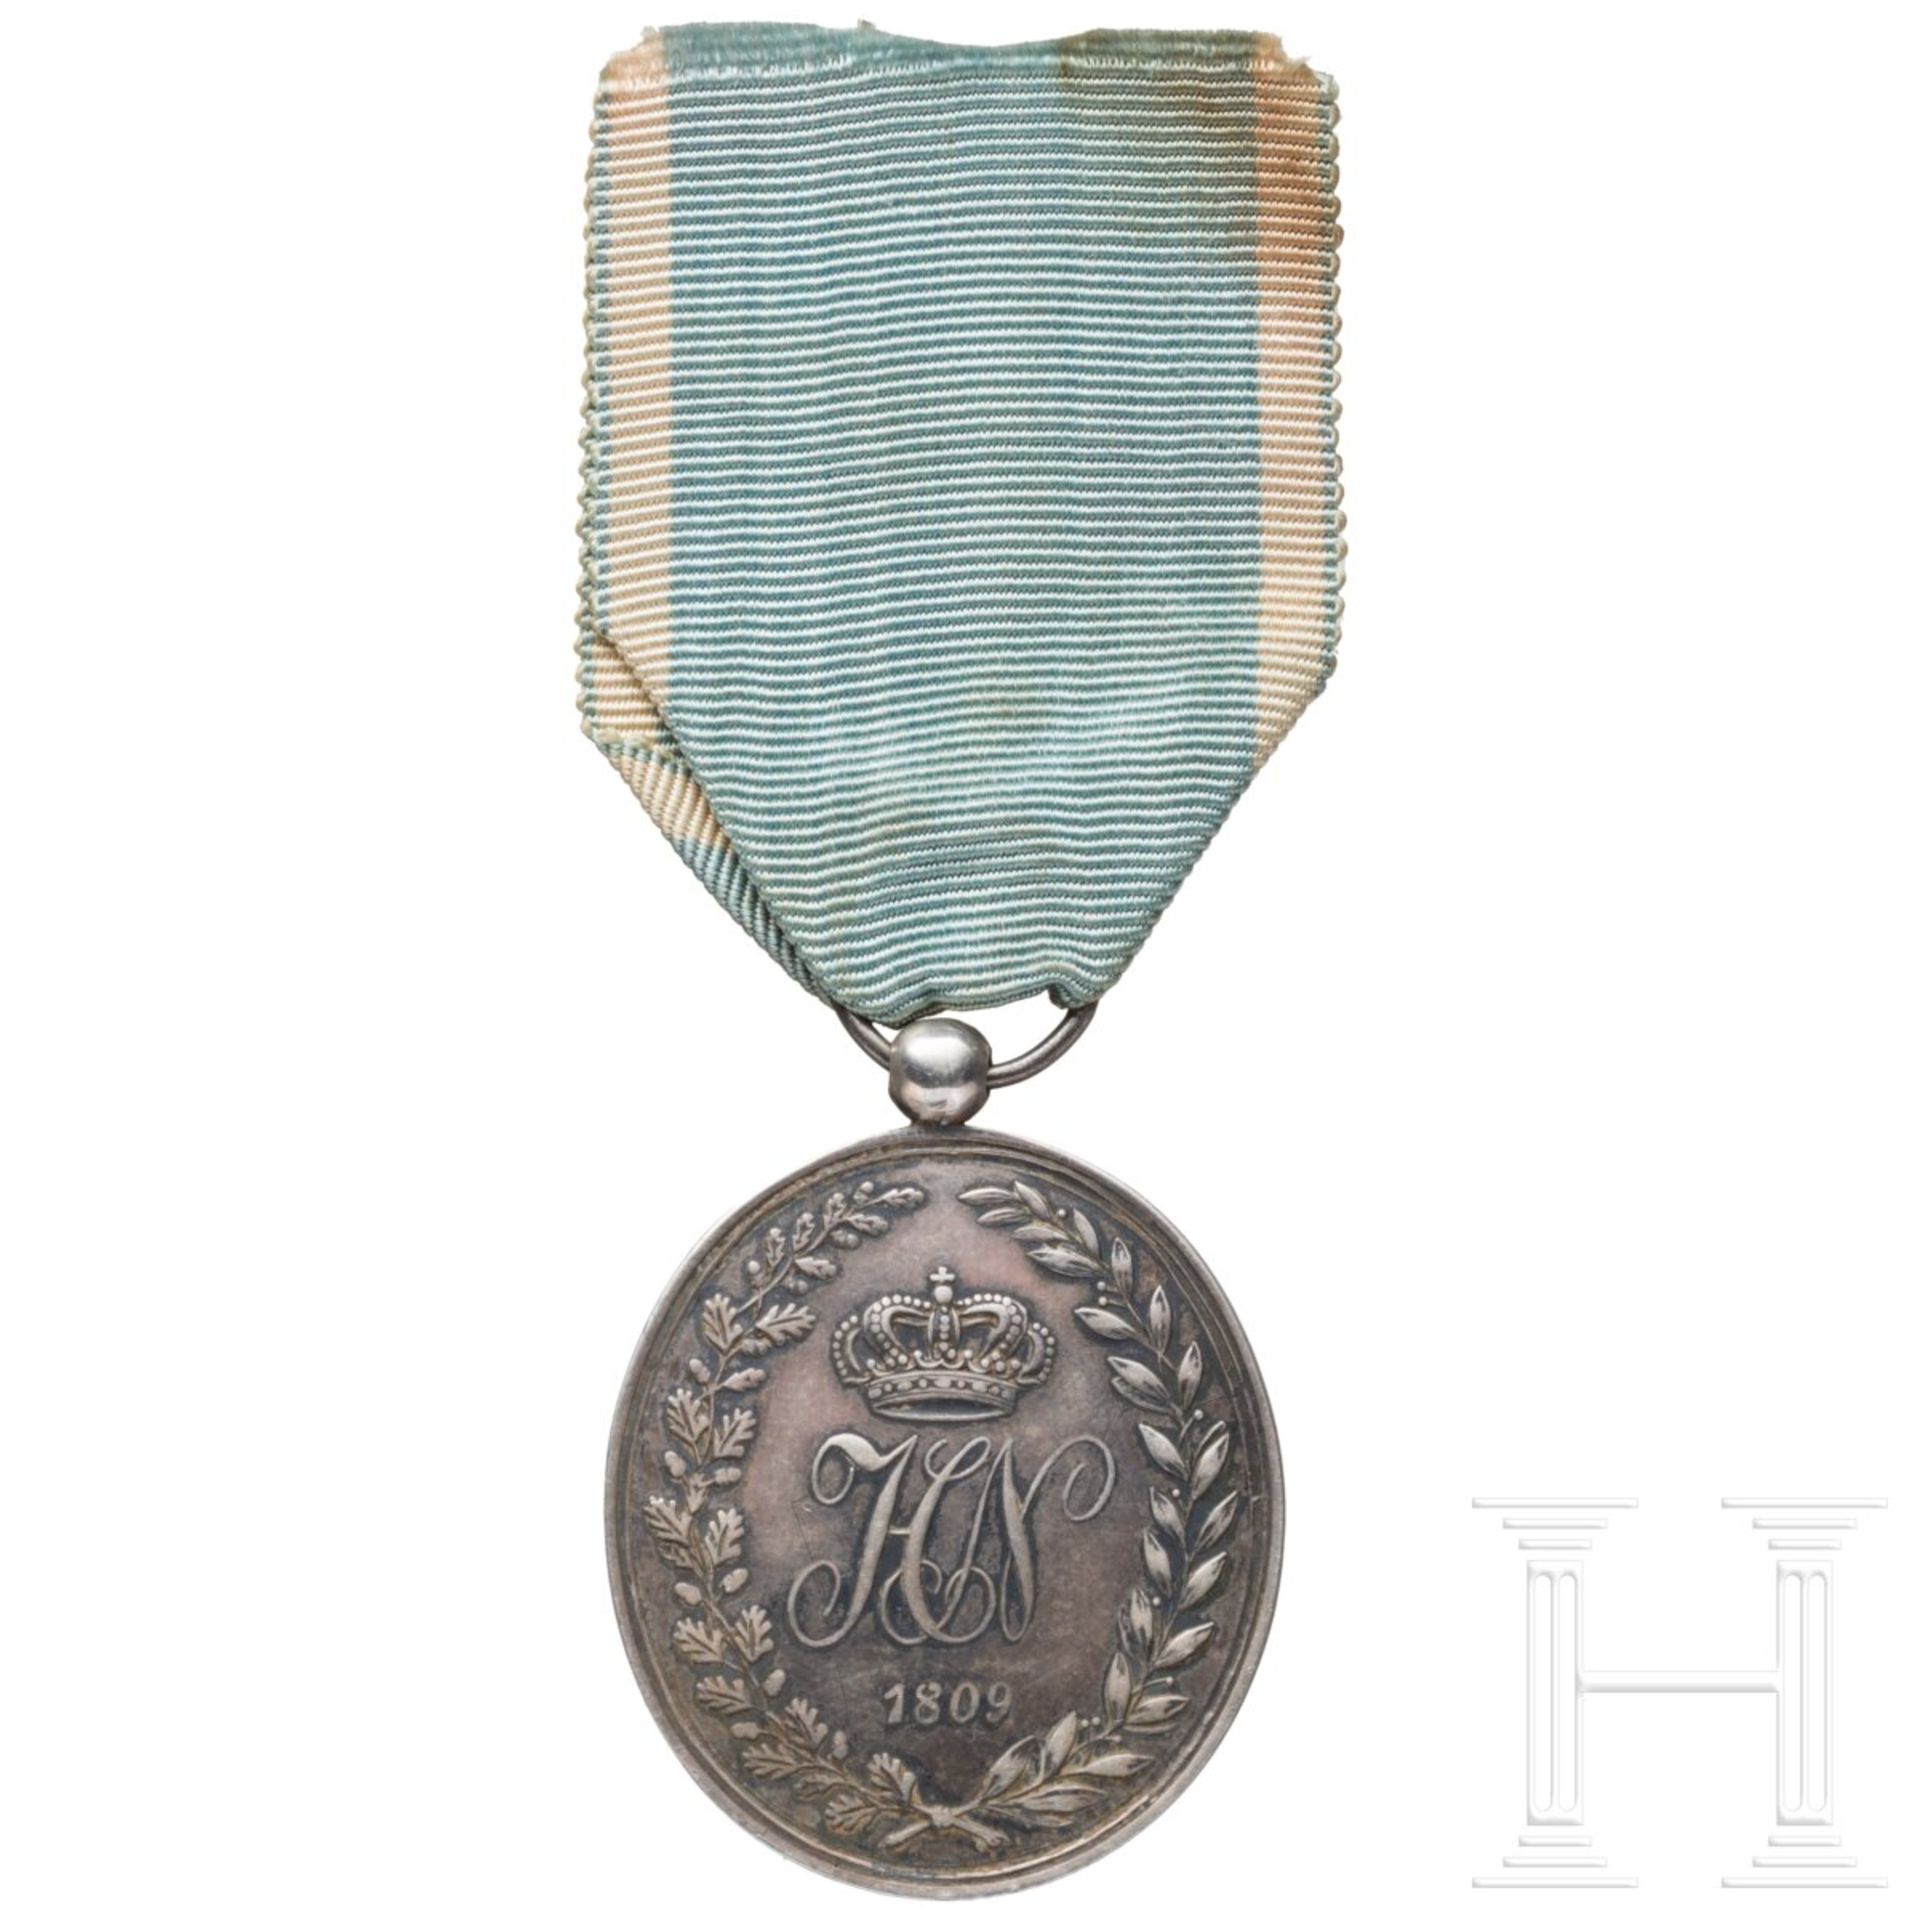 Ehrenmedaille des Königreichs Westfalen, datiert 1809 - Bild 2 aus 2